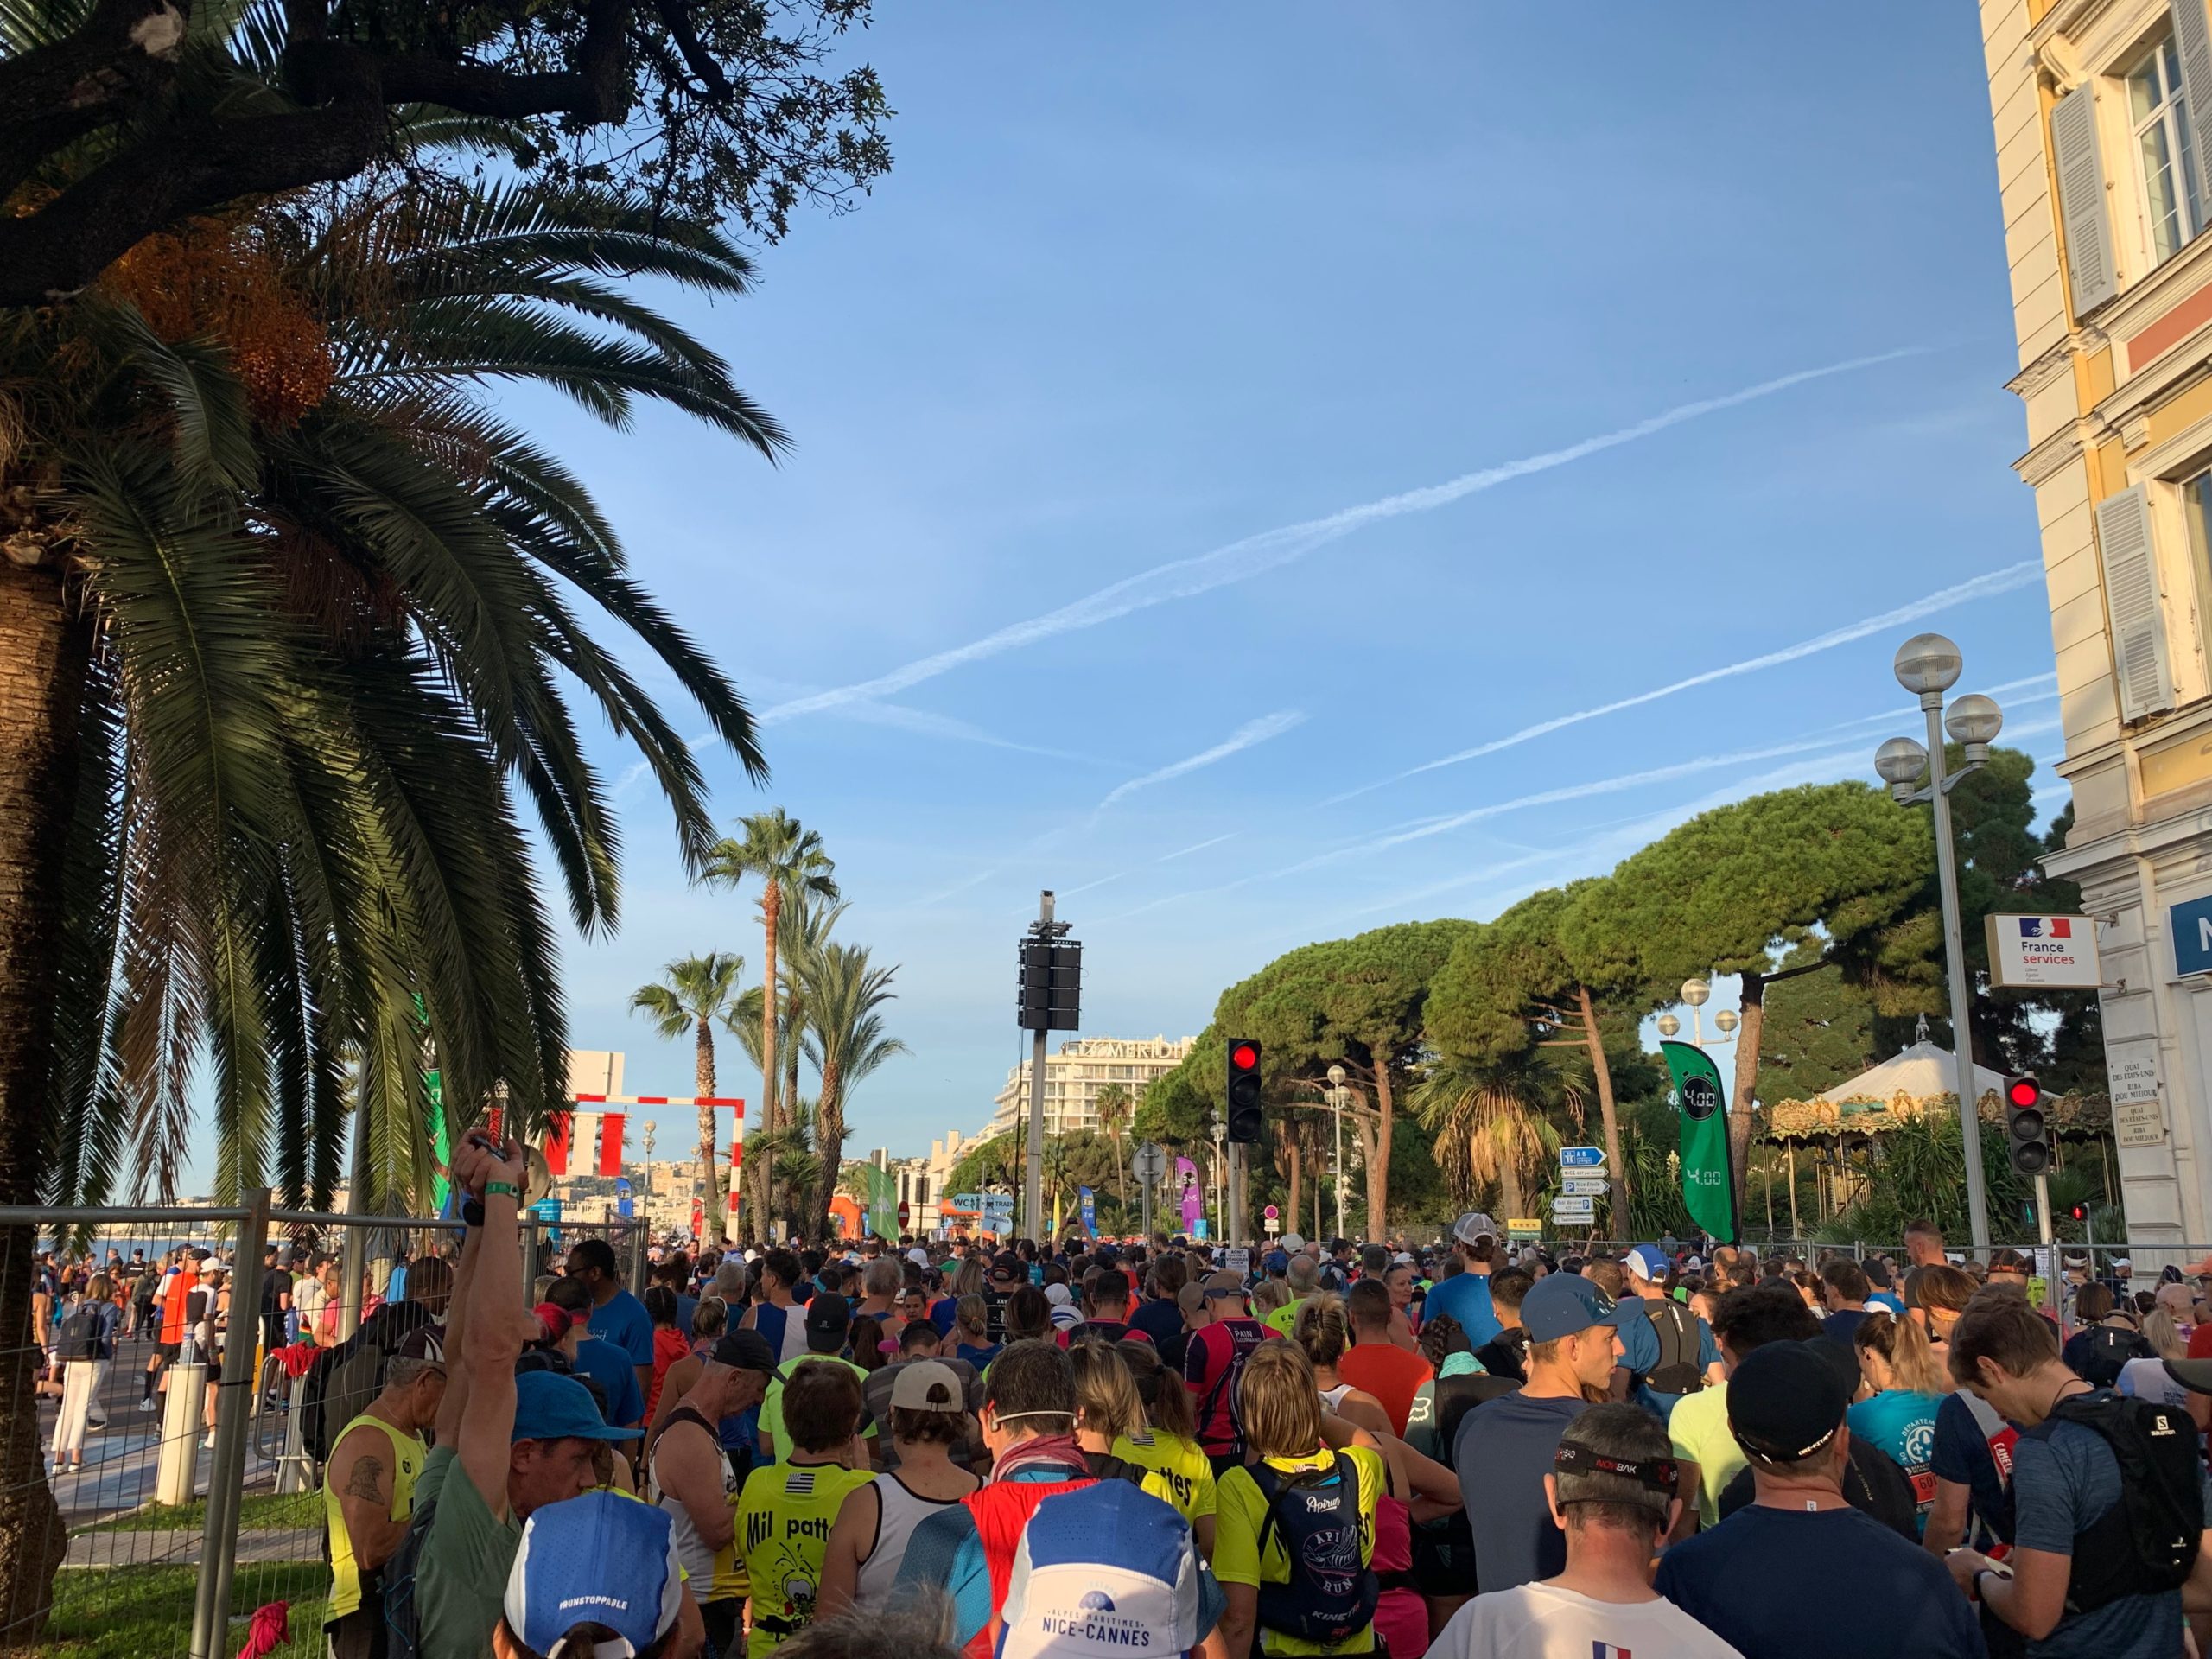 Le Nice-Cannes, mon premier marathon